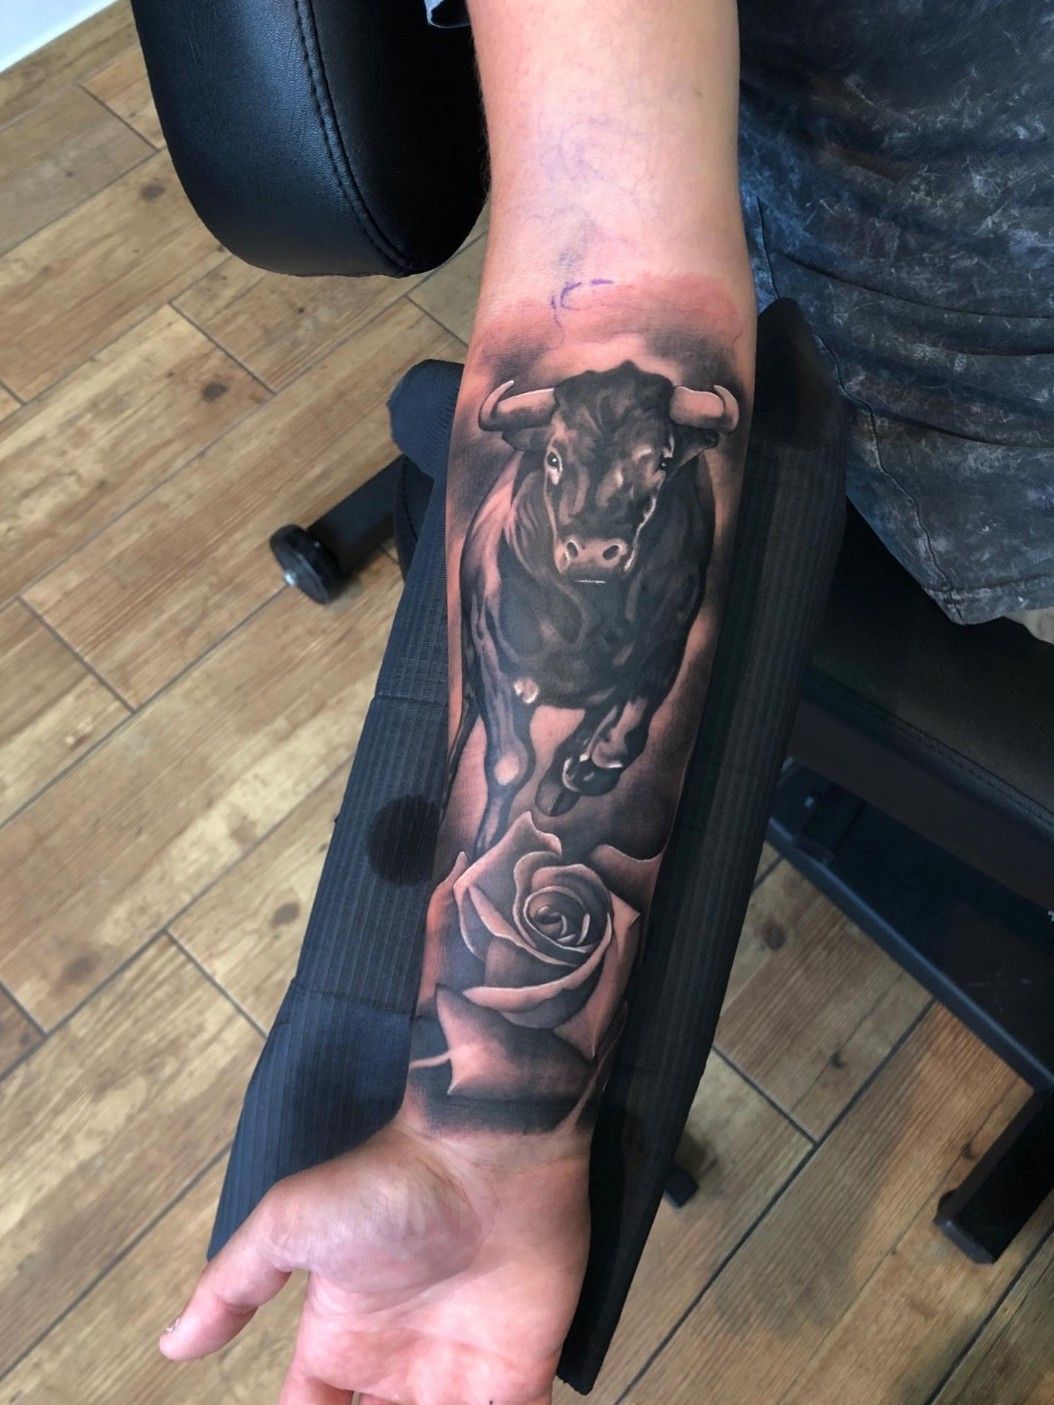 Woman and Roses Sleeve  Blackwood Tattoo Studio